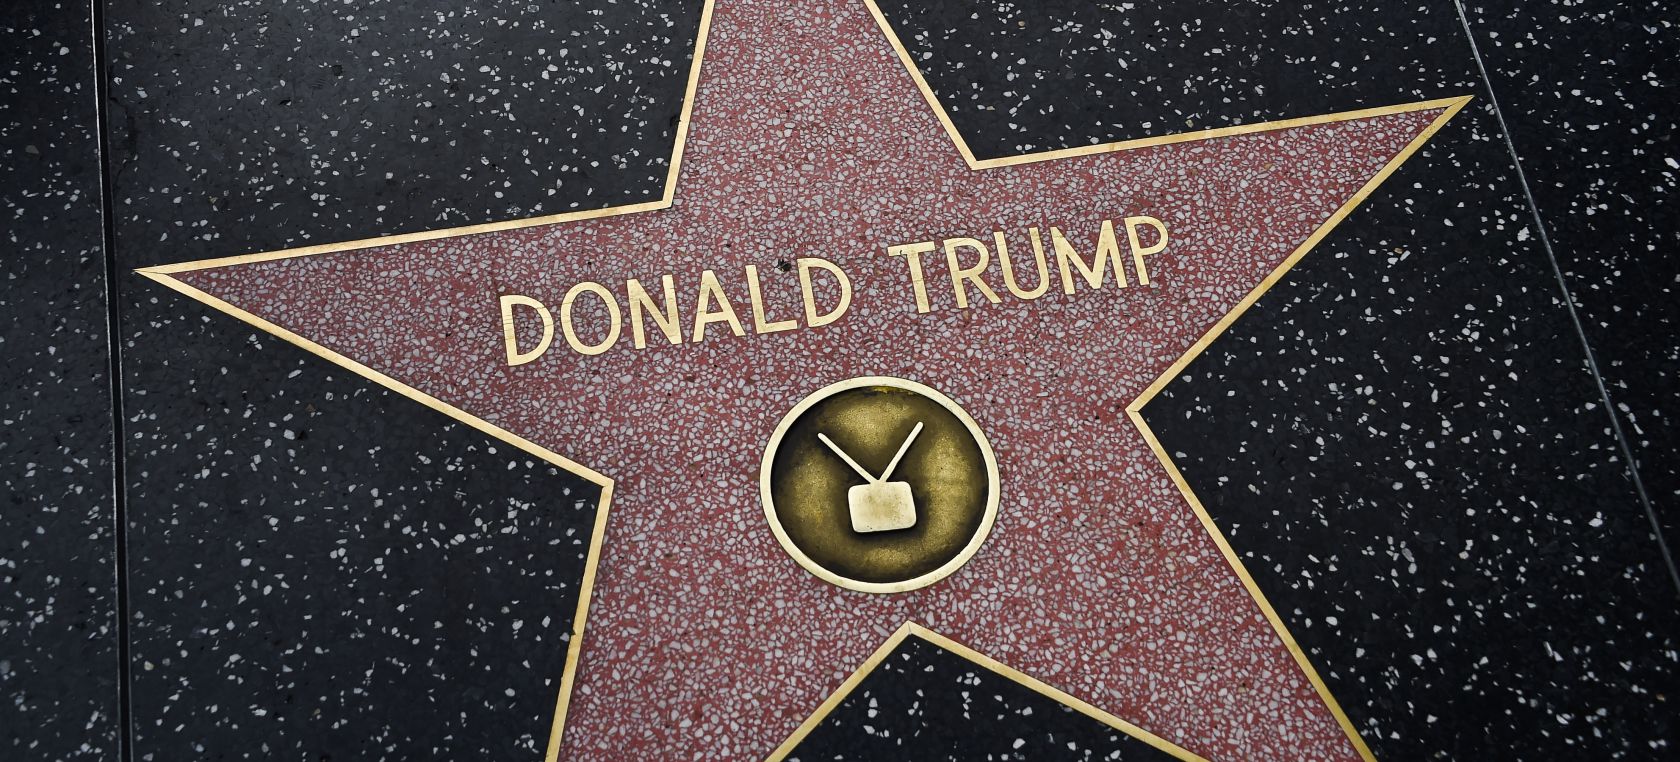 Legisladores luchan por quitar para siempre la estrella de Hollywood de Trump